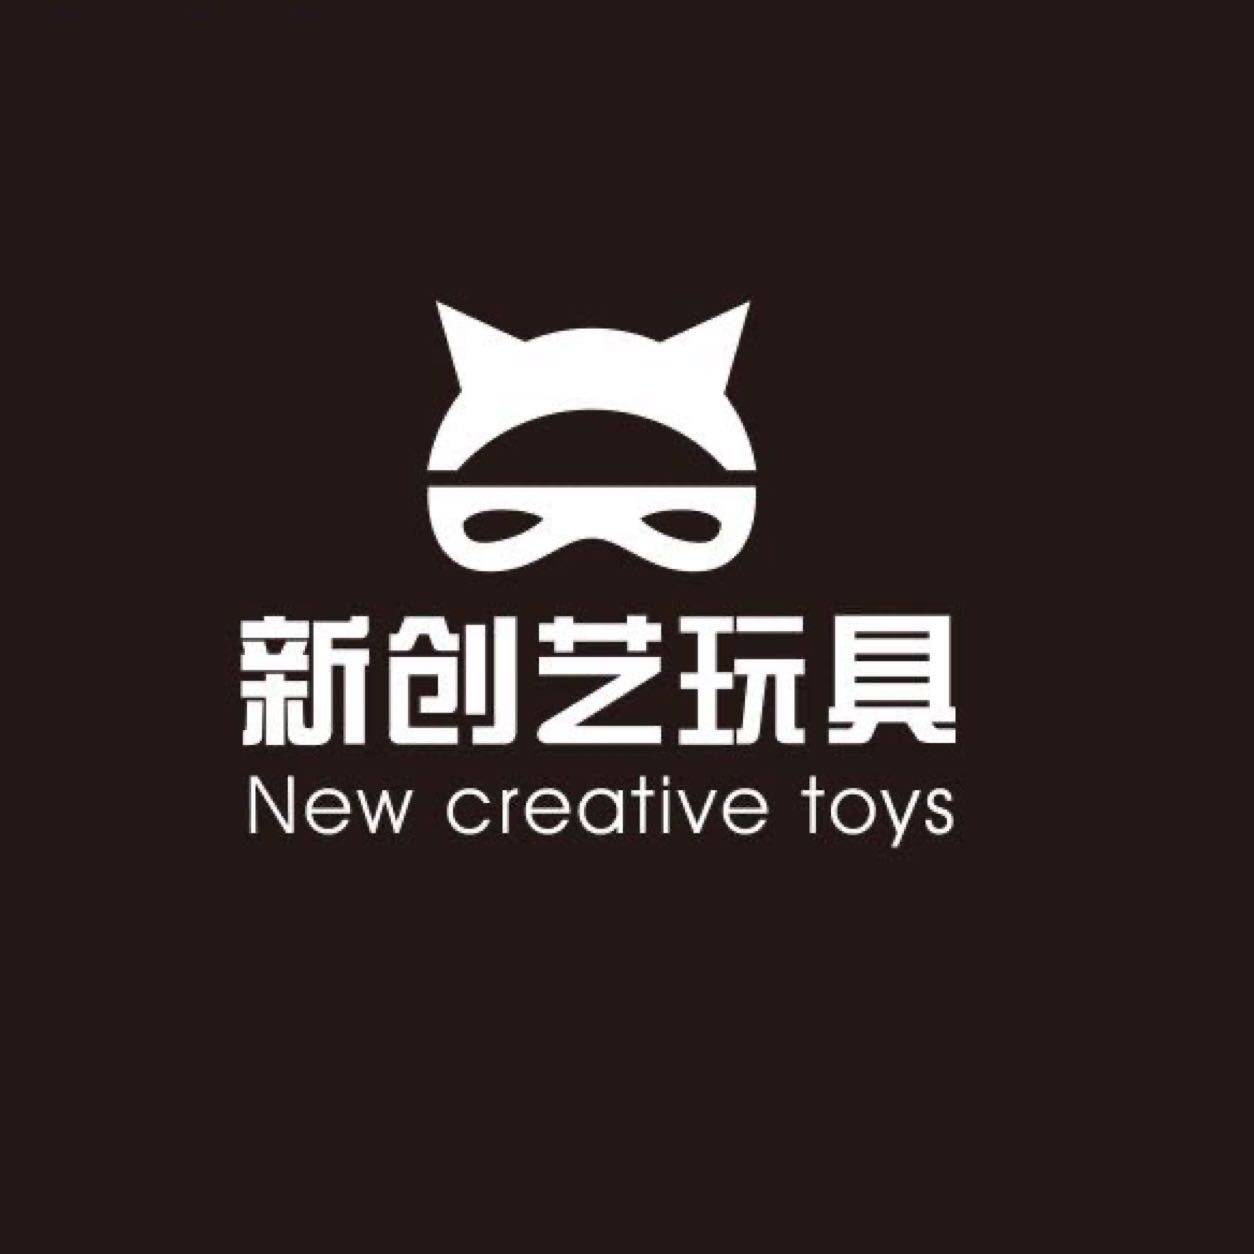 东莞市新创艺商贸有限公司logo